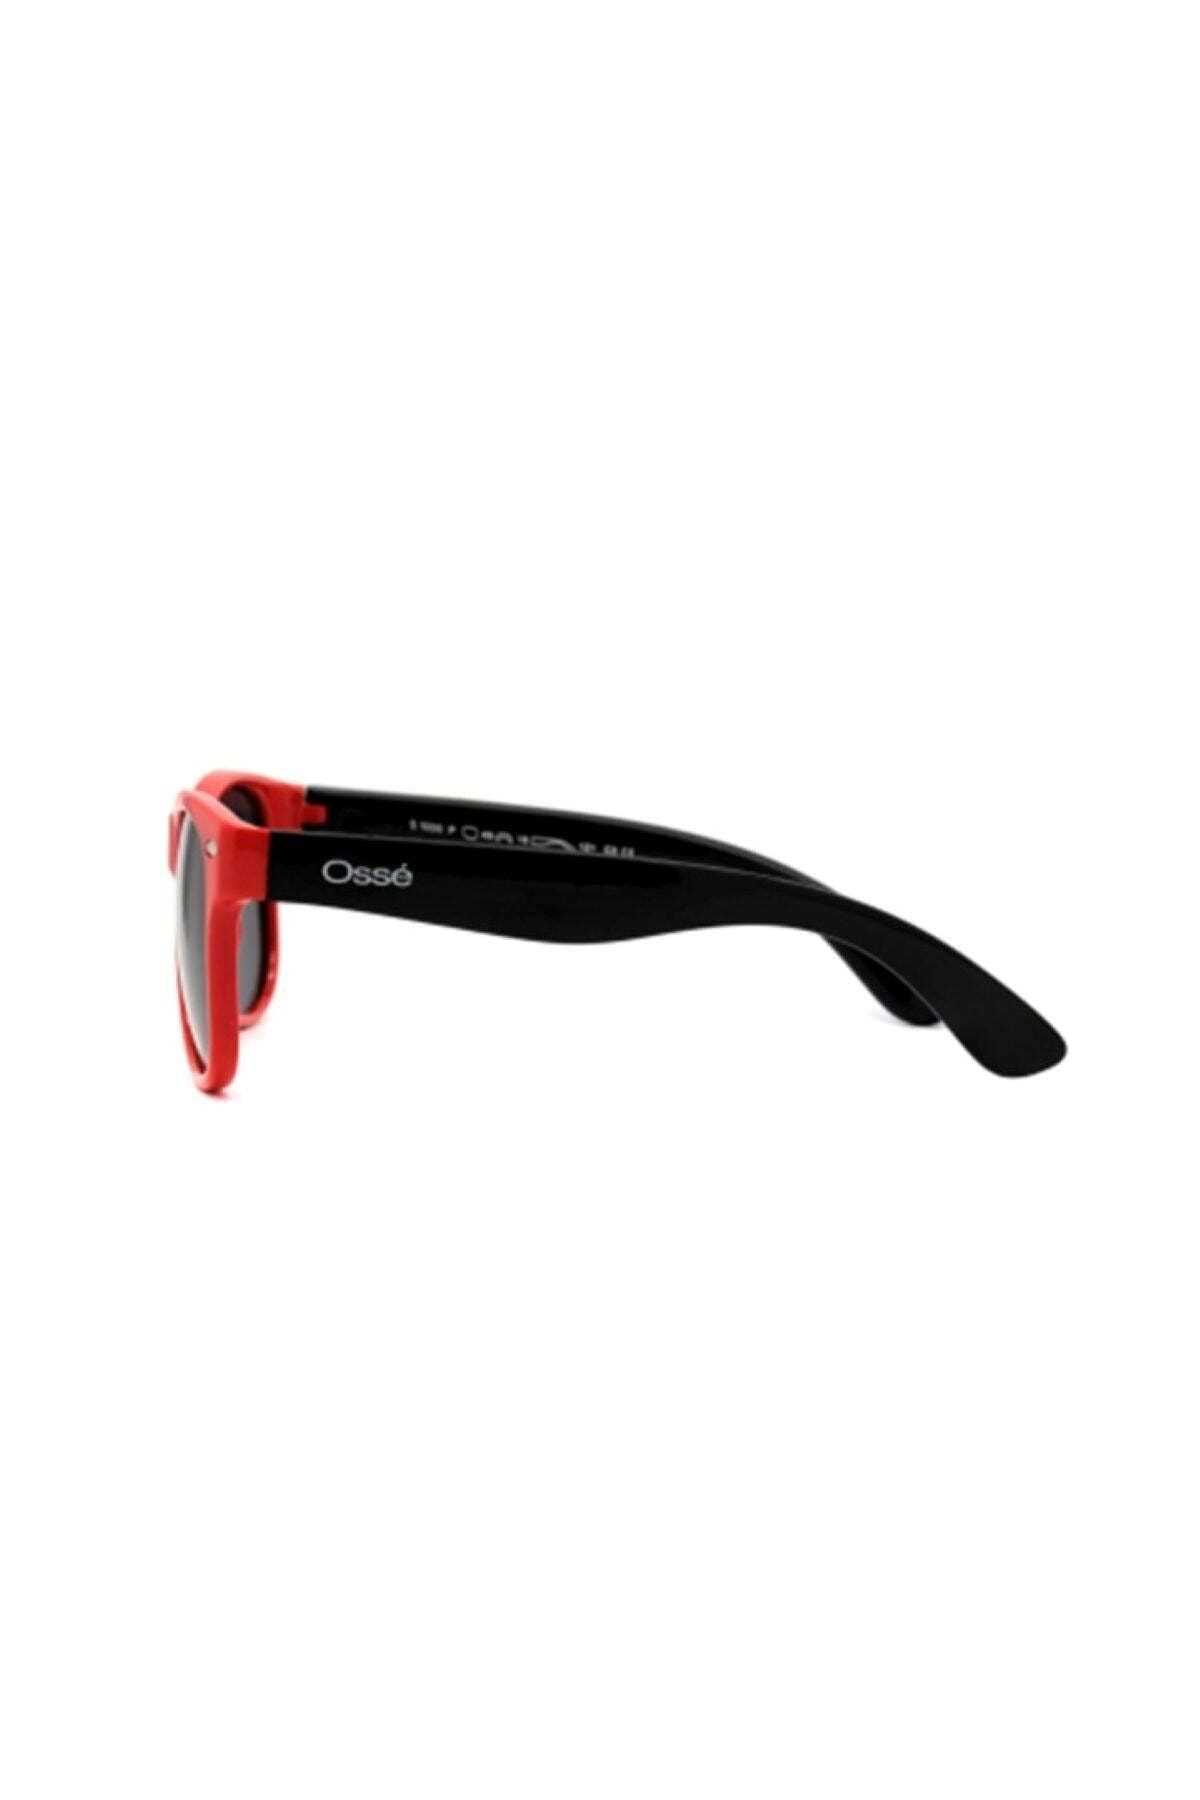 خرید نقدی عینک آفتابی پسرانه فروشگاه اینترنتی برند Osse رنگ قرمز ty32180229